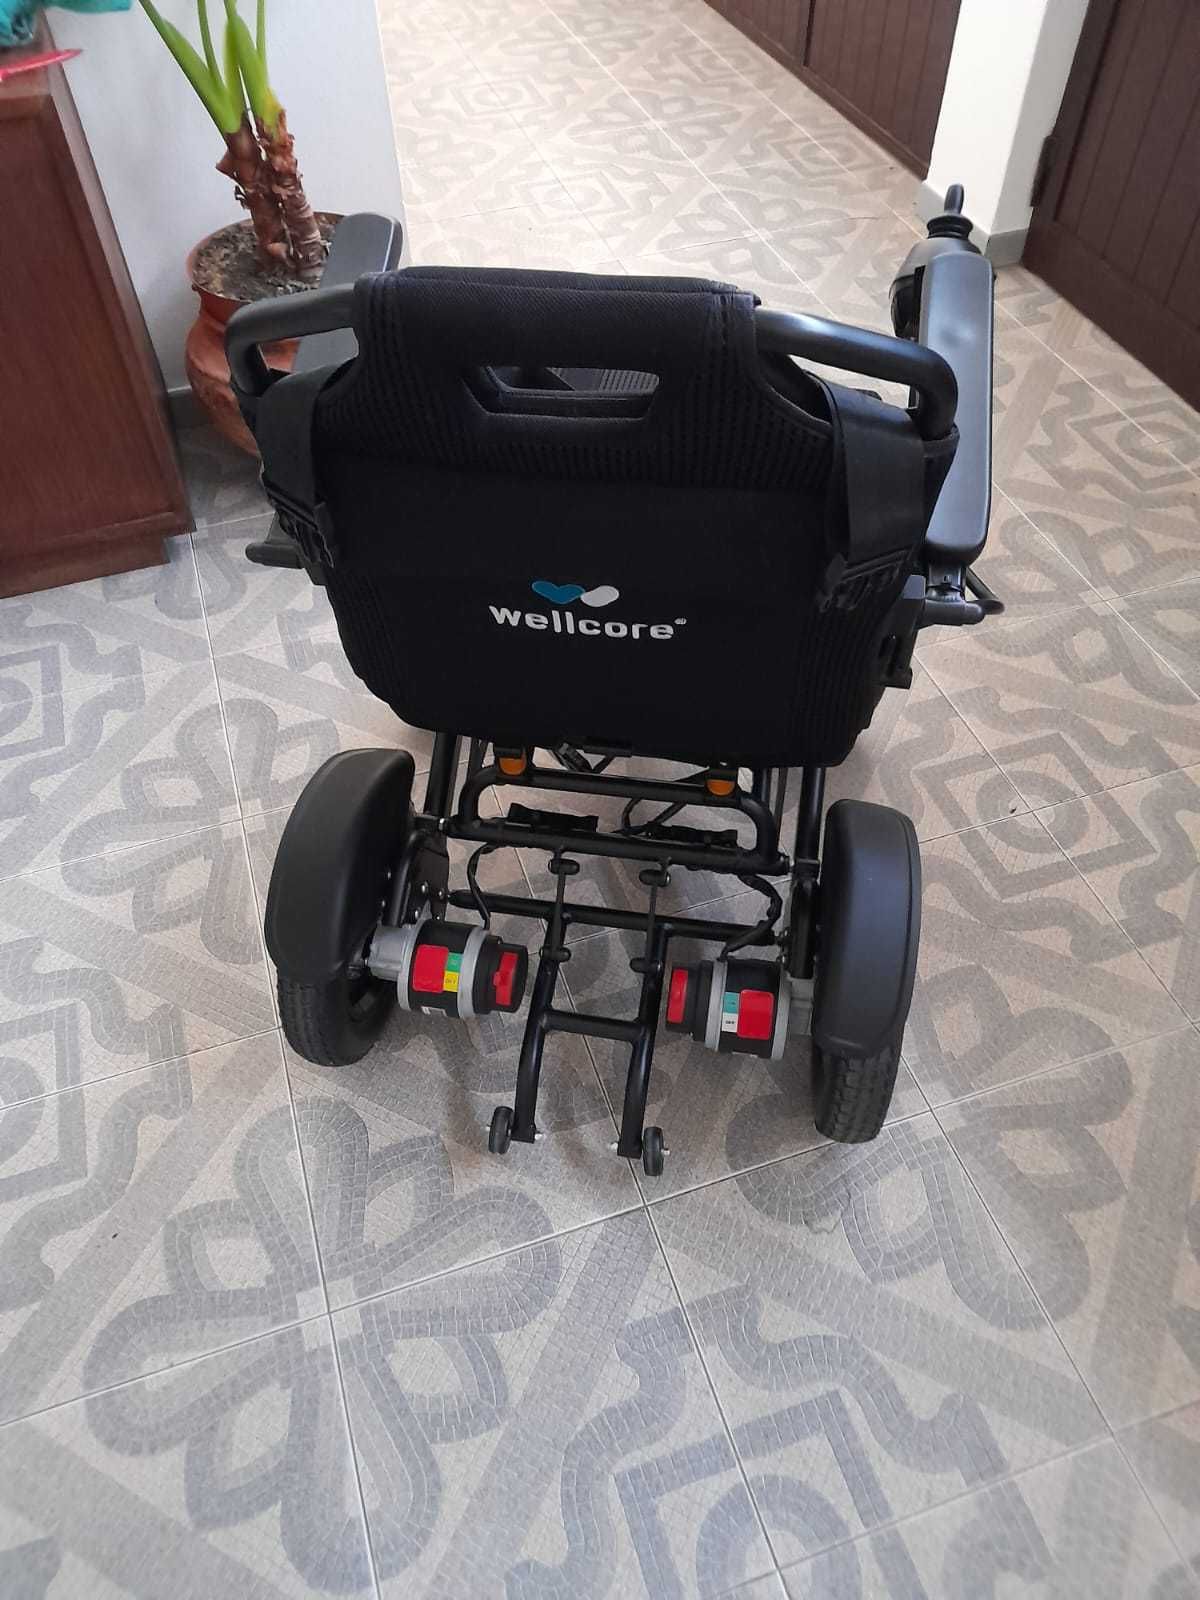 Cadeira de rodas eléctrica